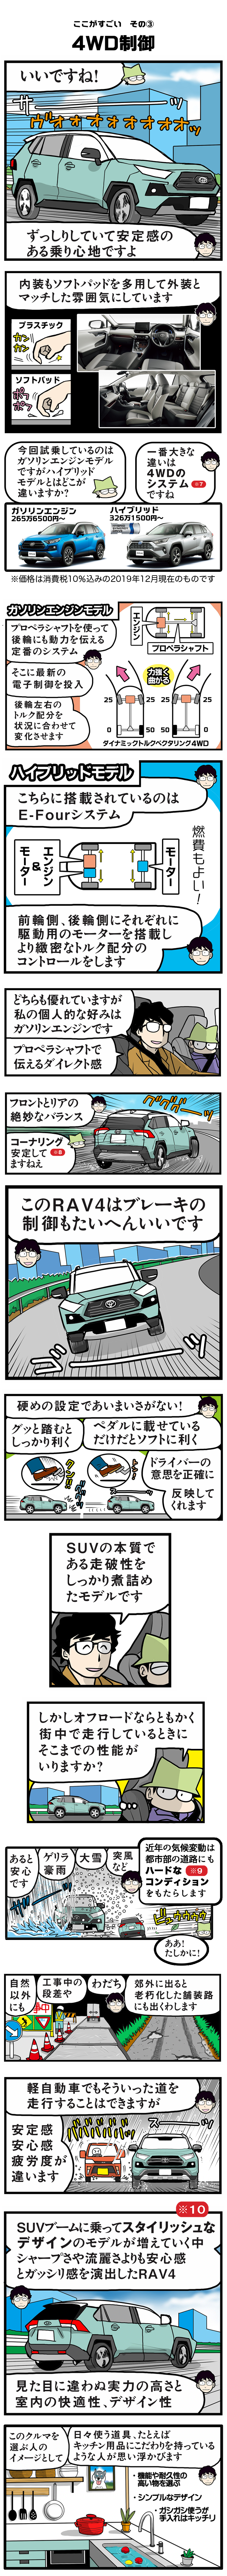 トヨタ RAV4（田代哲也）